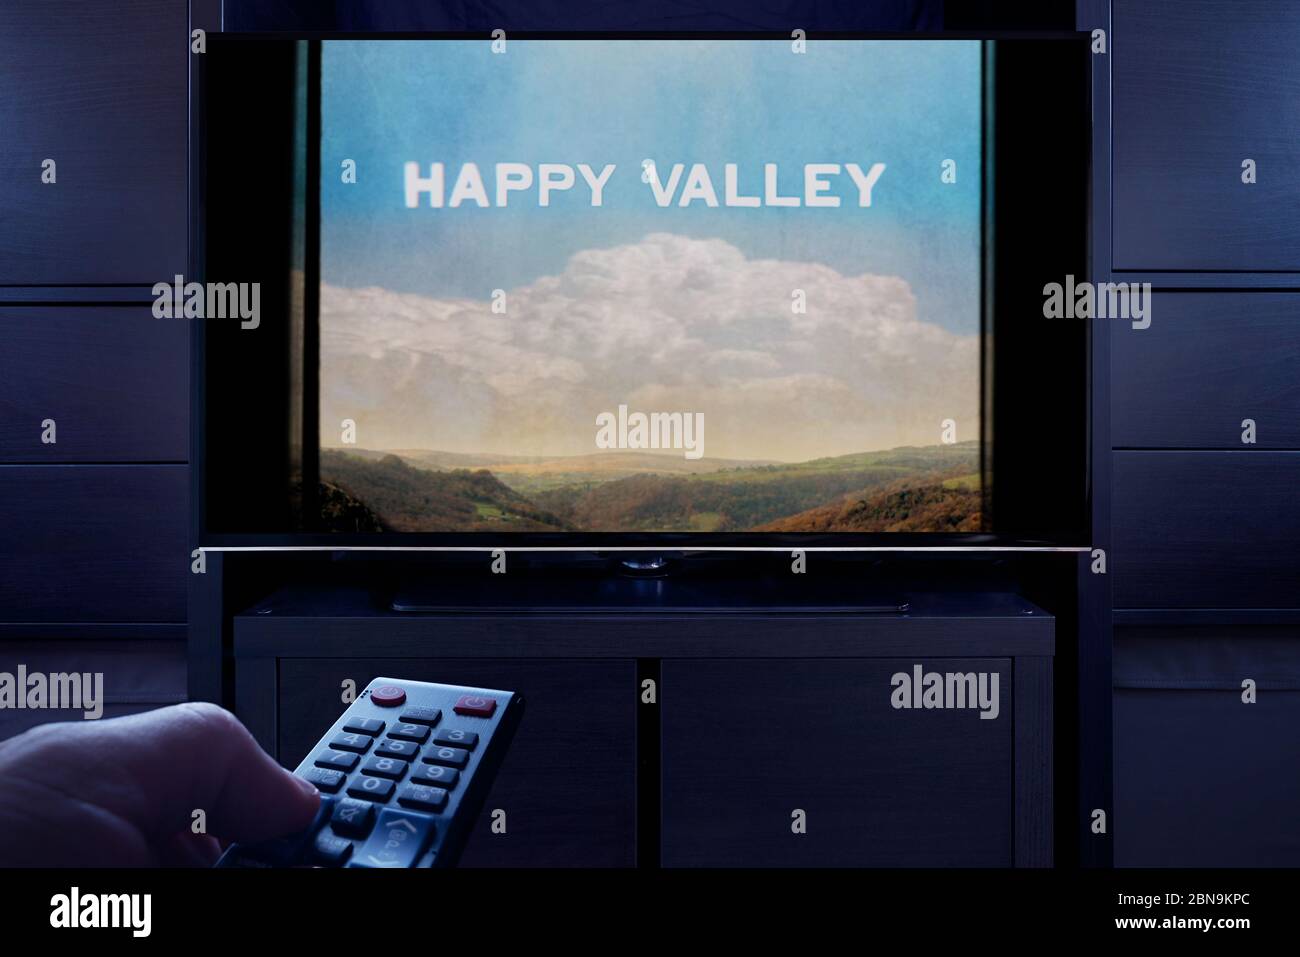 Un uomo punta un telecomando TV verso il televisore che visualizza la schermata principale del titolo di Happy Valley (solo per uso editoriale). Foto Stock